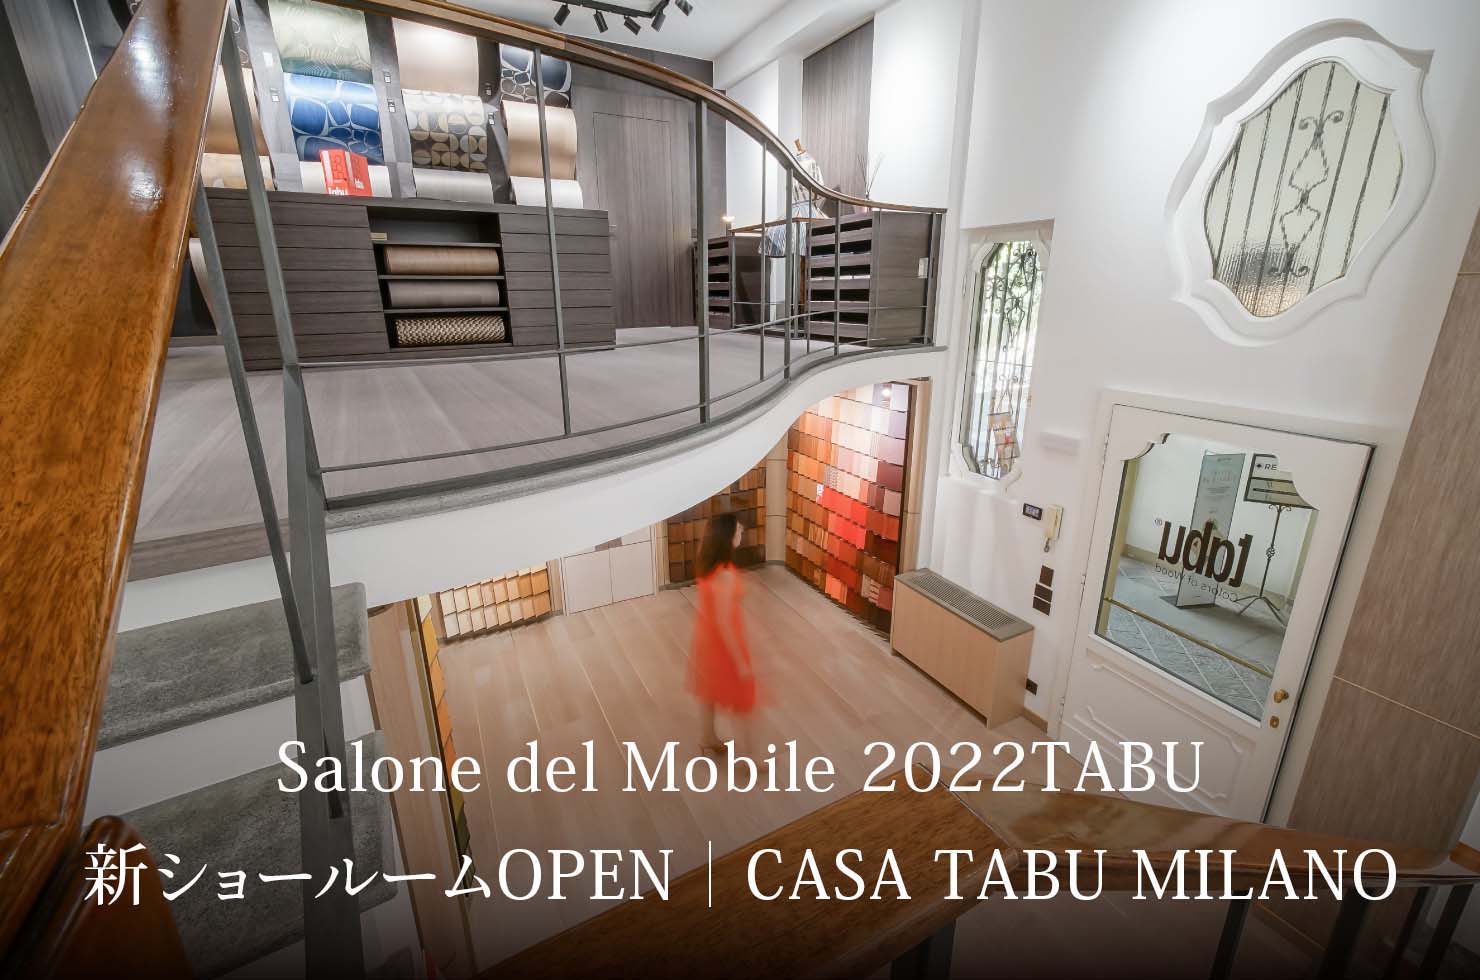 Salone del Mobile 2022TABU 新ショールームOPEN｜CASA TABU MILANO